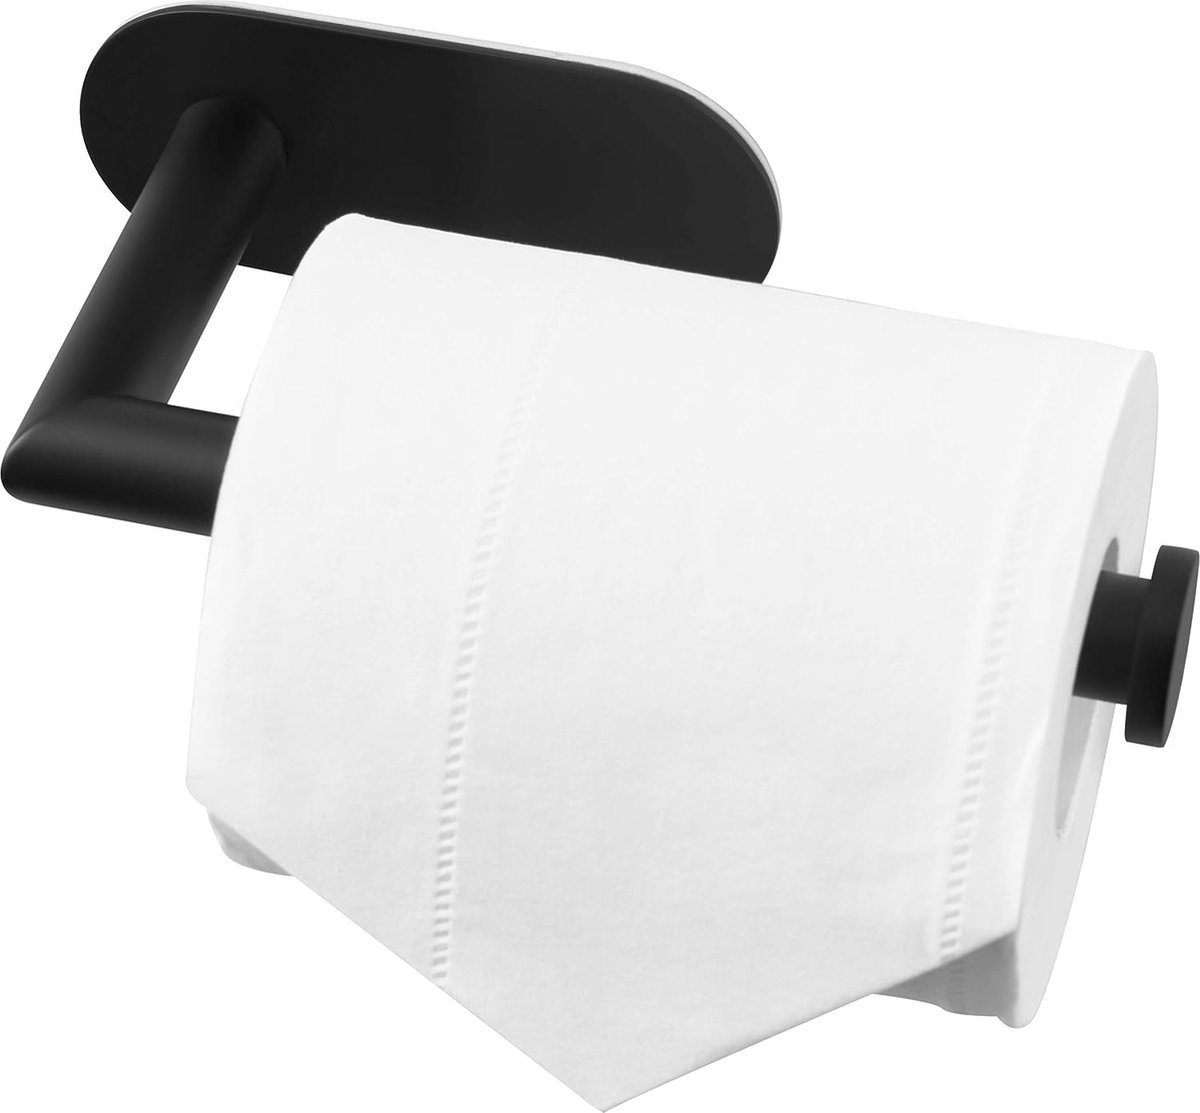 Toiletrolhouder RVS zwart - Zonder boren - Voor wc of badkamer - Roestvrij staal